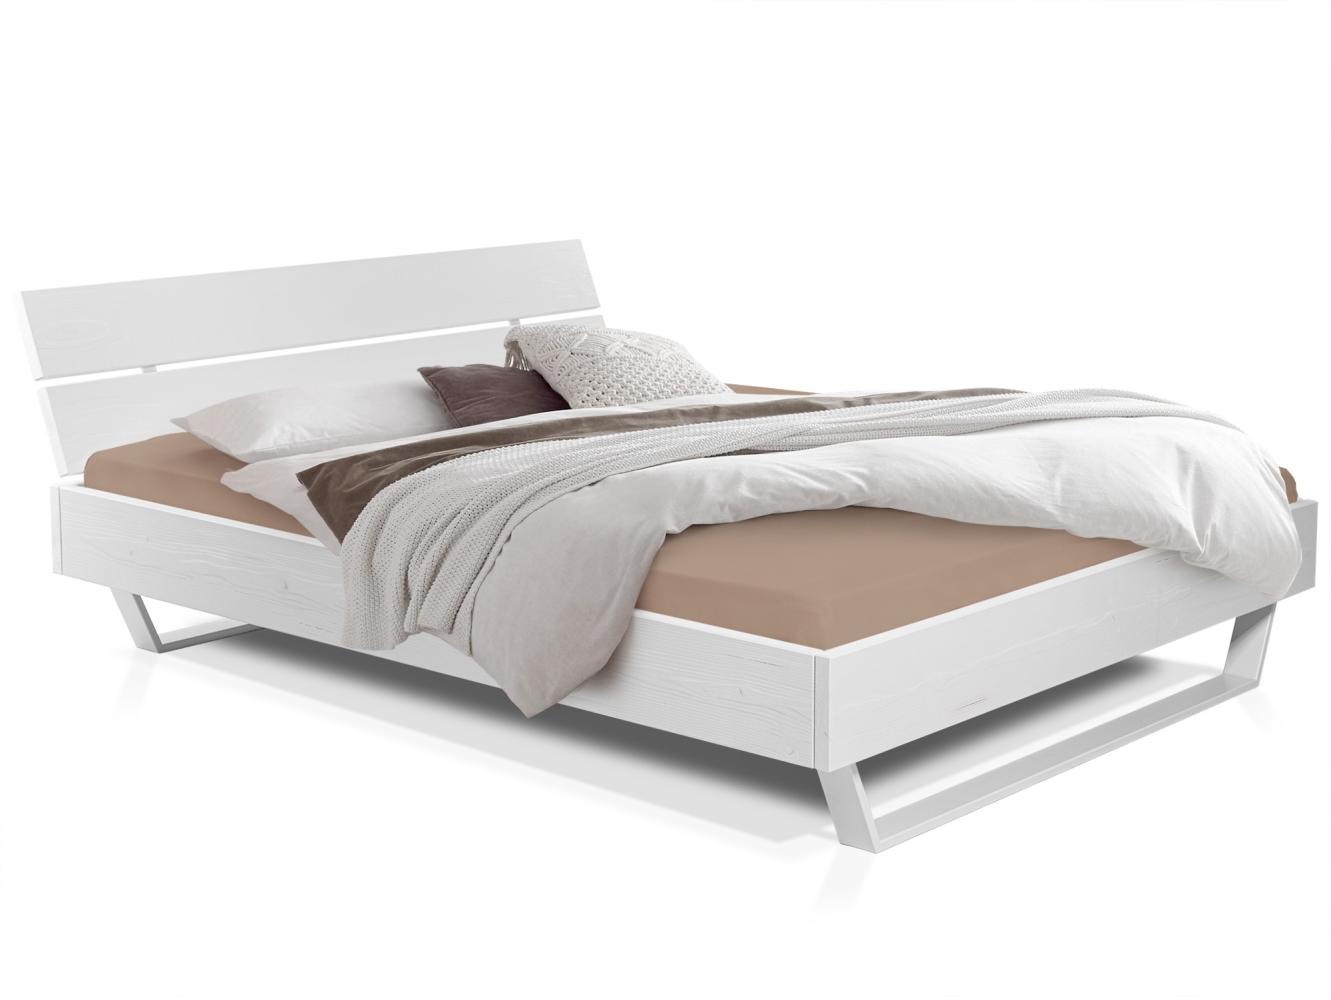 Möbel-Eins LUKY Kufenbett mit Kopfteil, Material Massivholz, Fichte massiv, Kufen weiß weiss 90 x 220 cm Bild 1